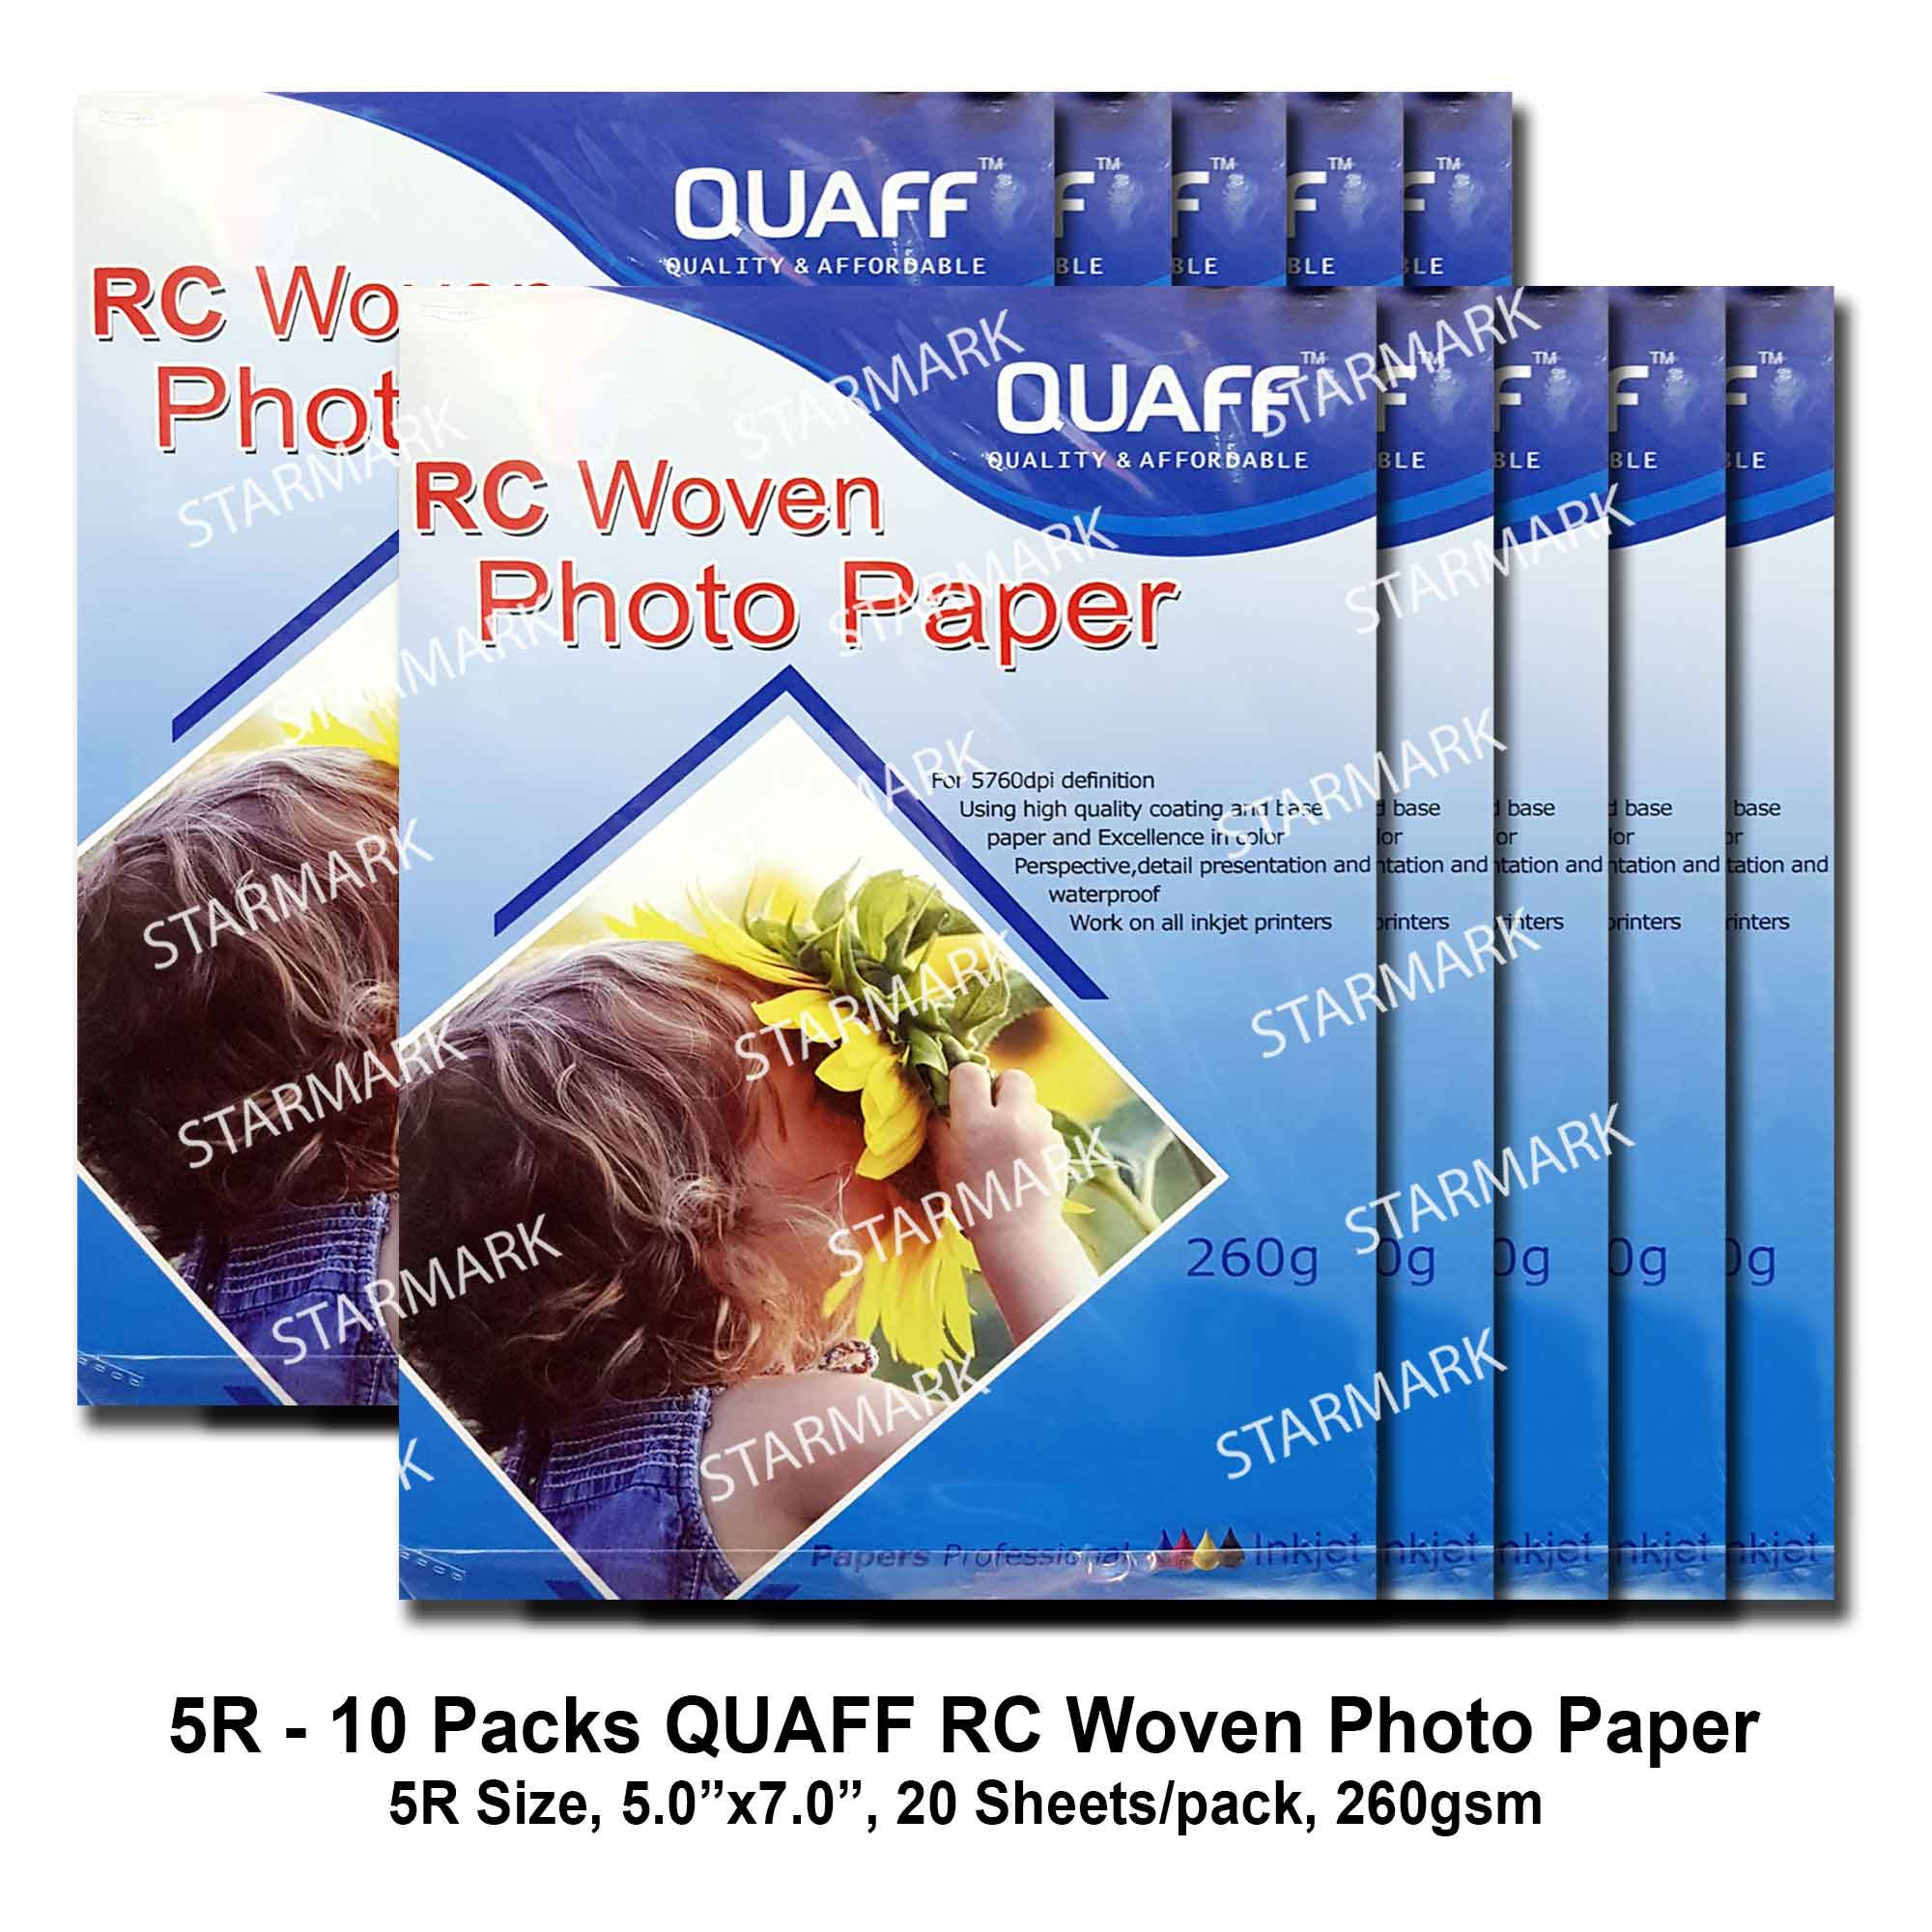 Quaff RC Woven Photo Paper 260gsm - Uniprint